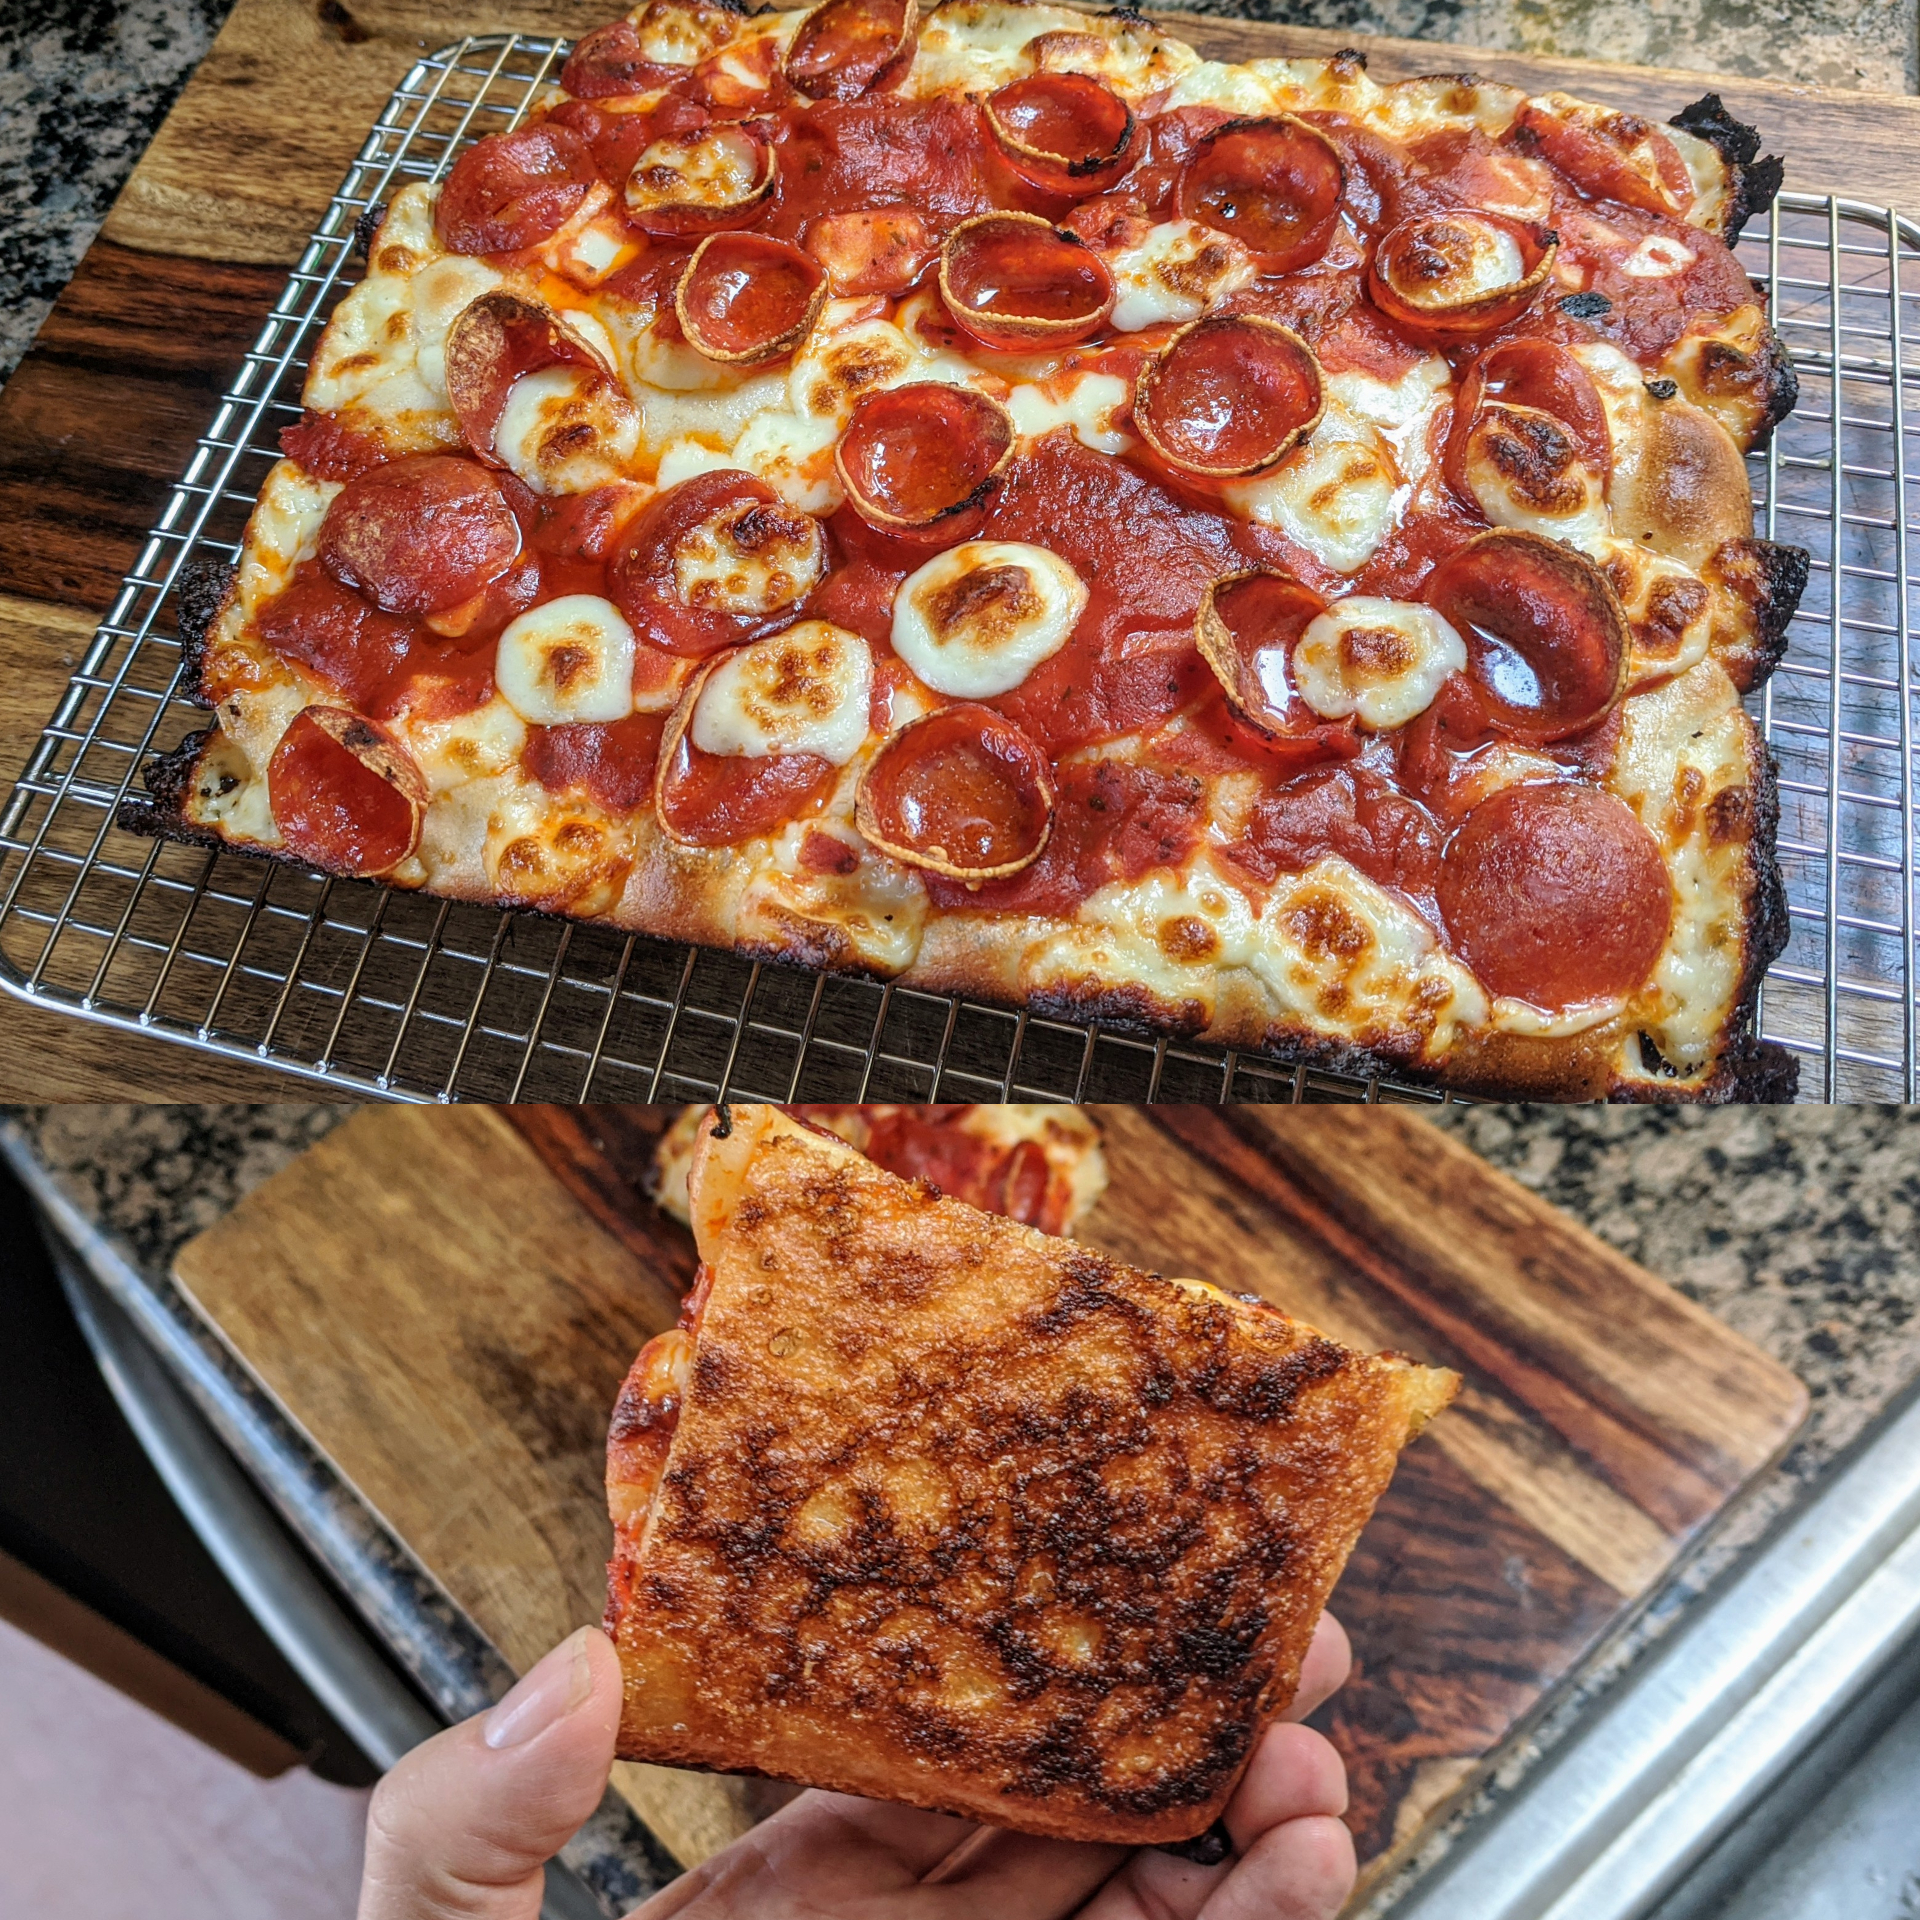 что нужно для приготовления пиццы пепперони в домашних условиях фото 74